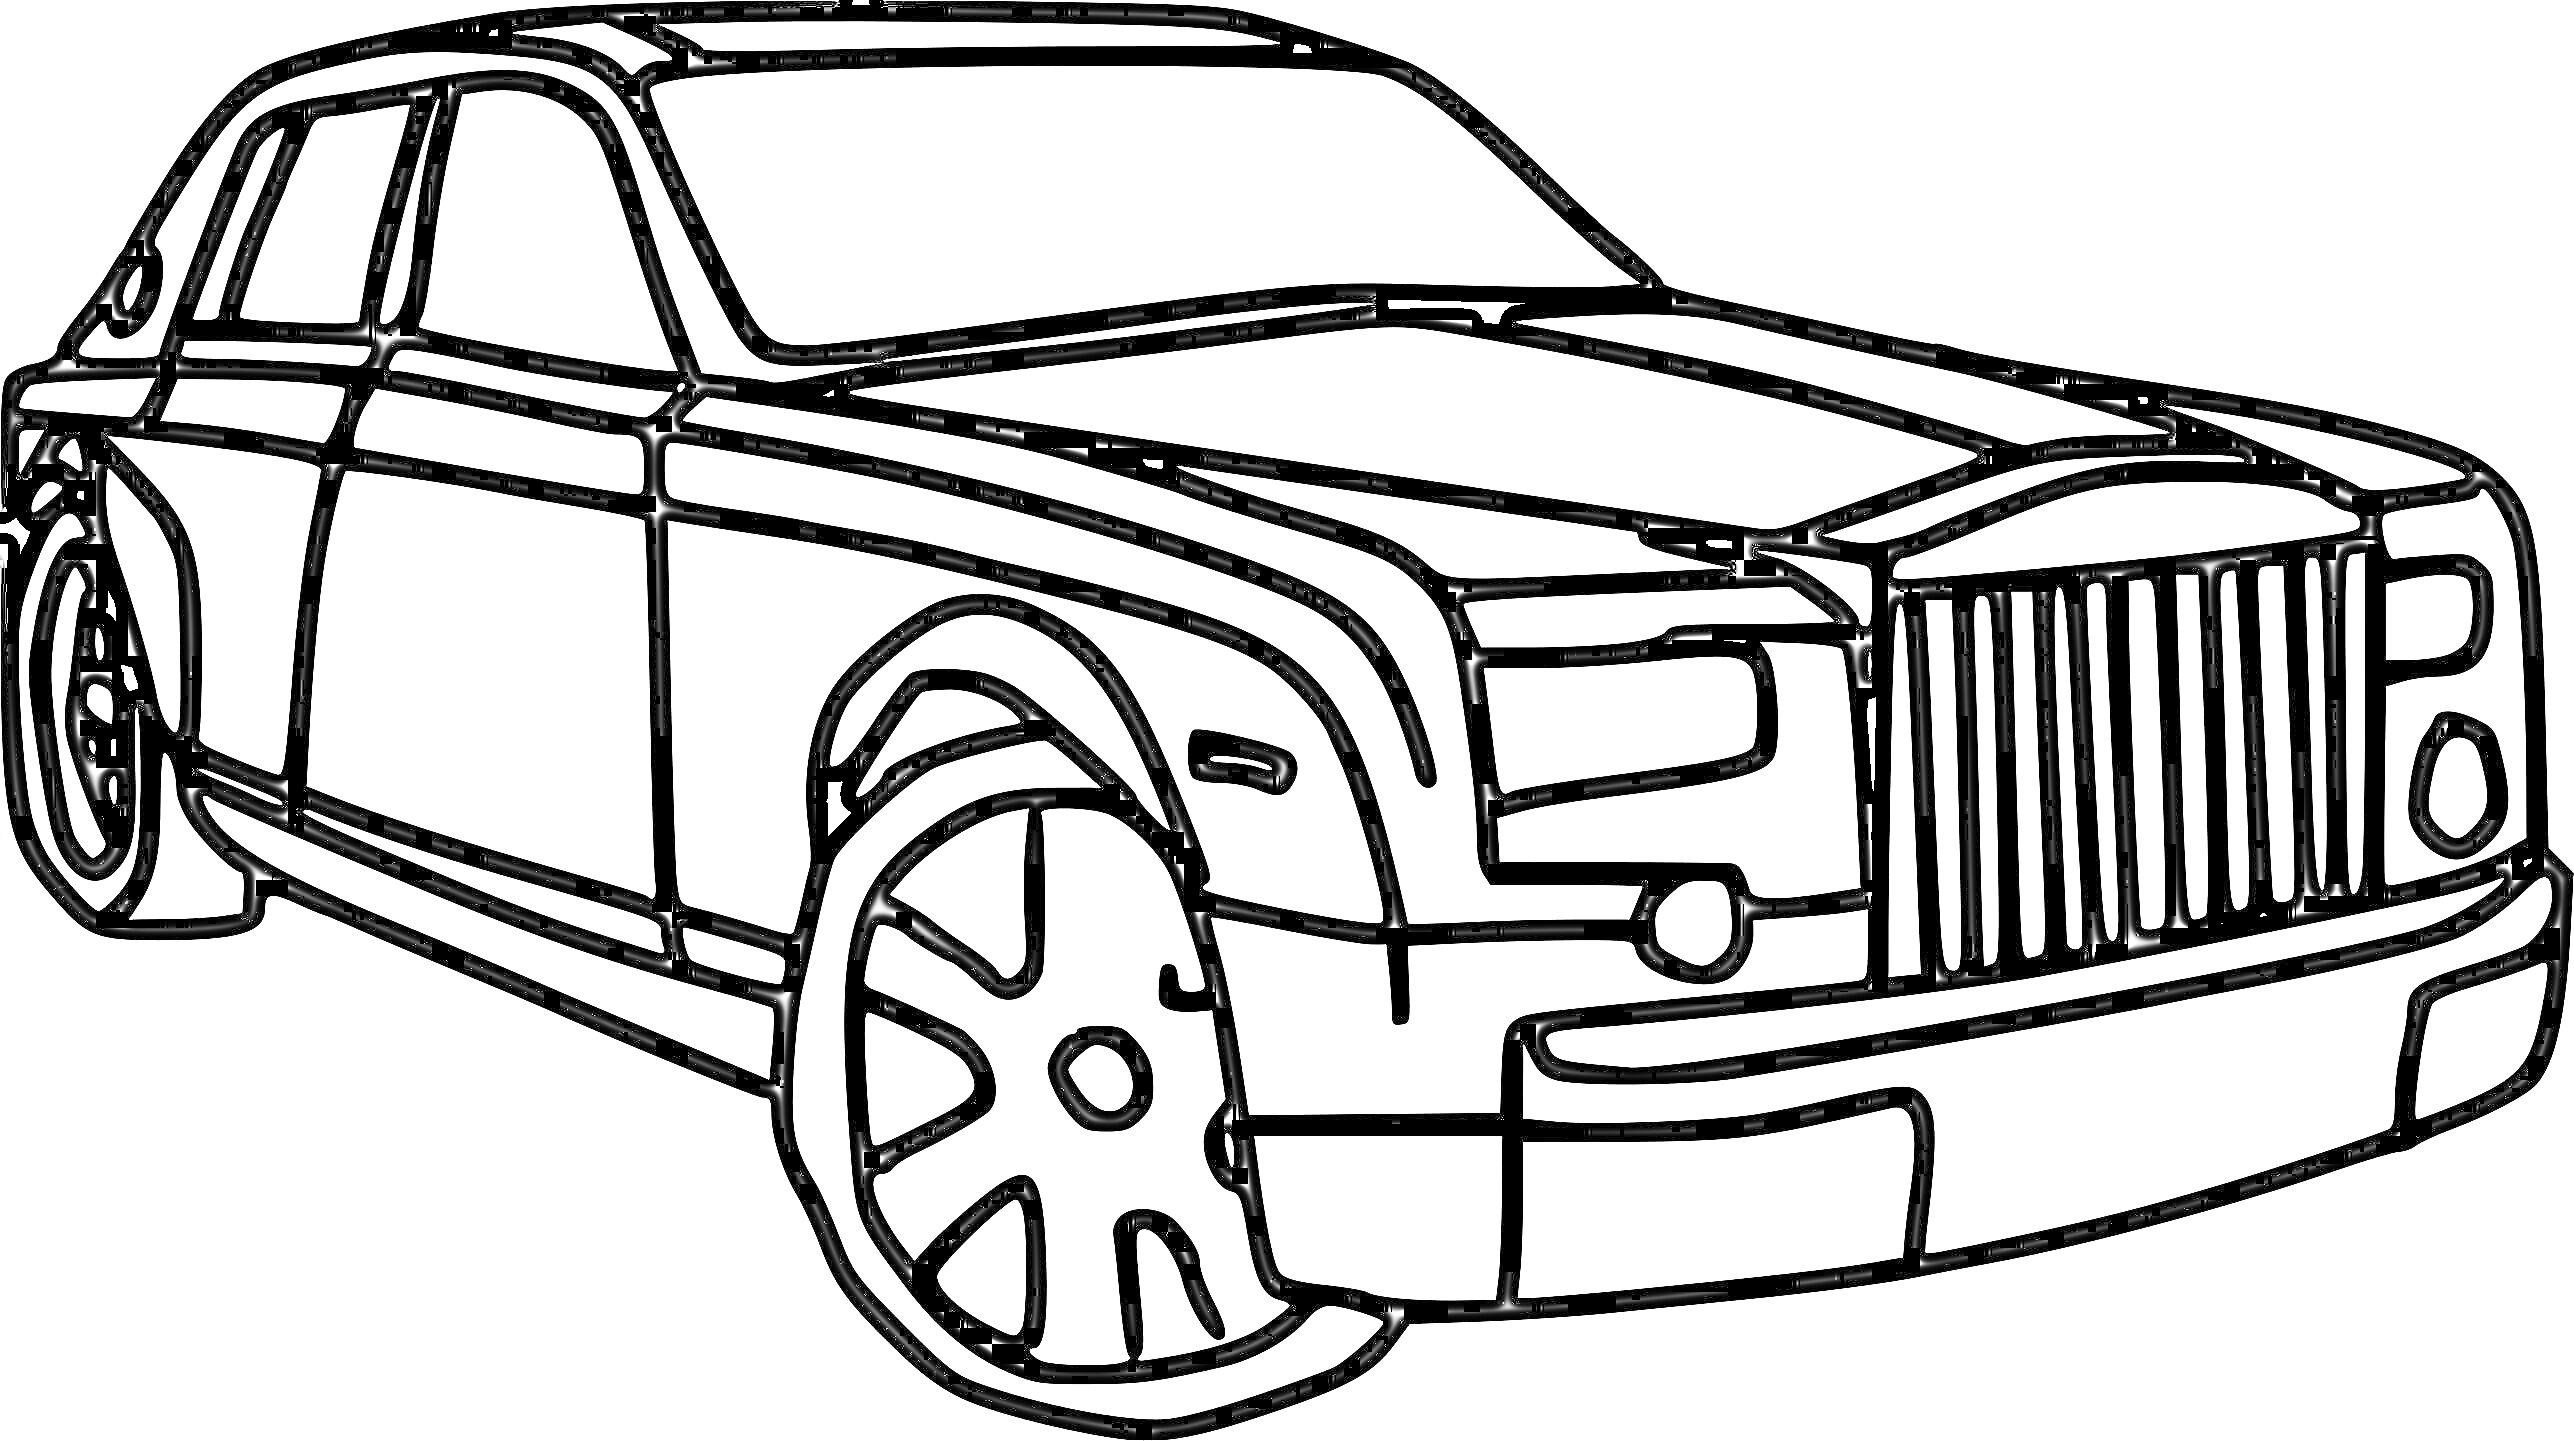 Раскраска Раскраска автомобиля Rolls-Royce с крупными колесами, решеткой радиатора и фарой